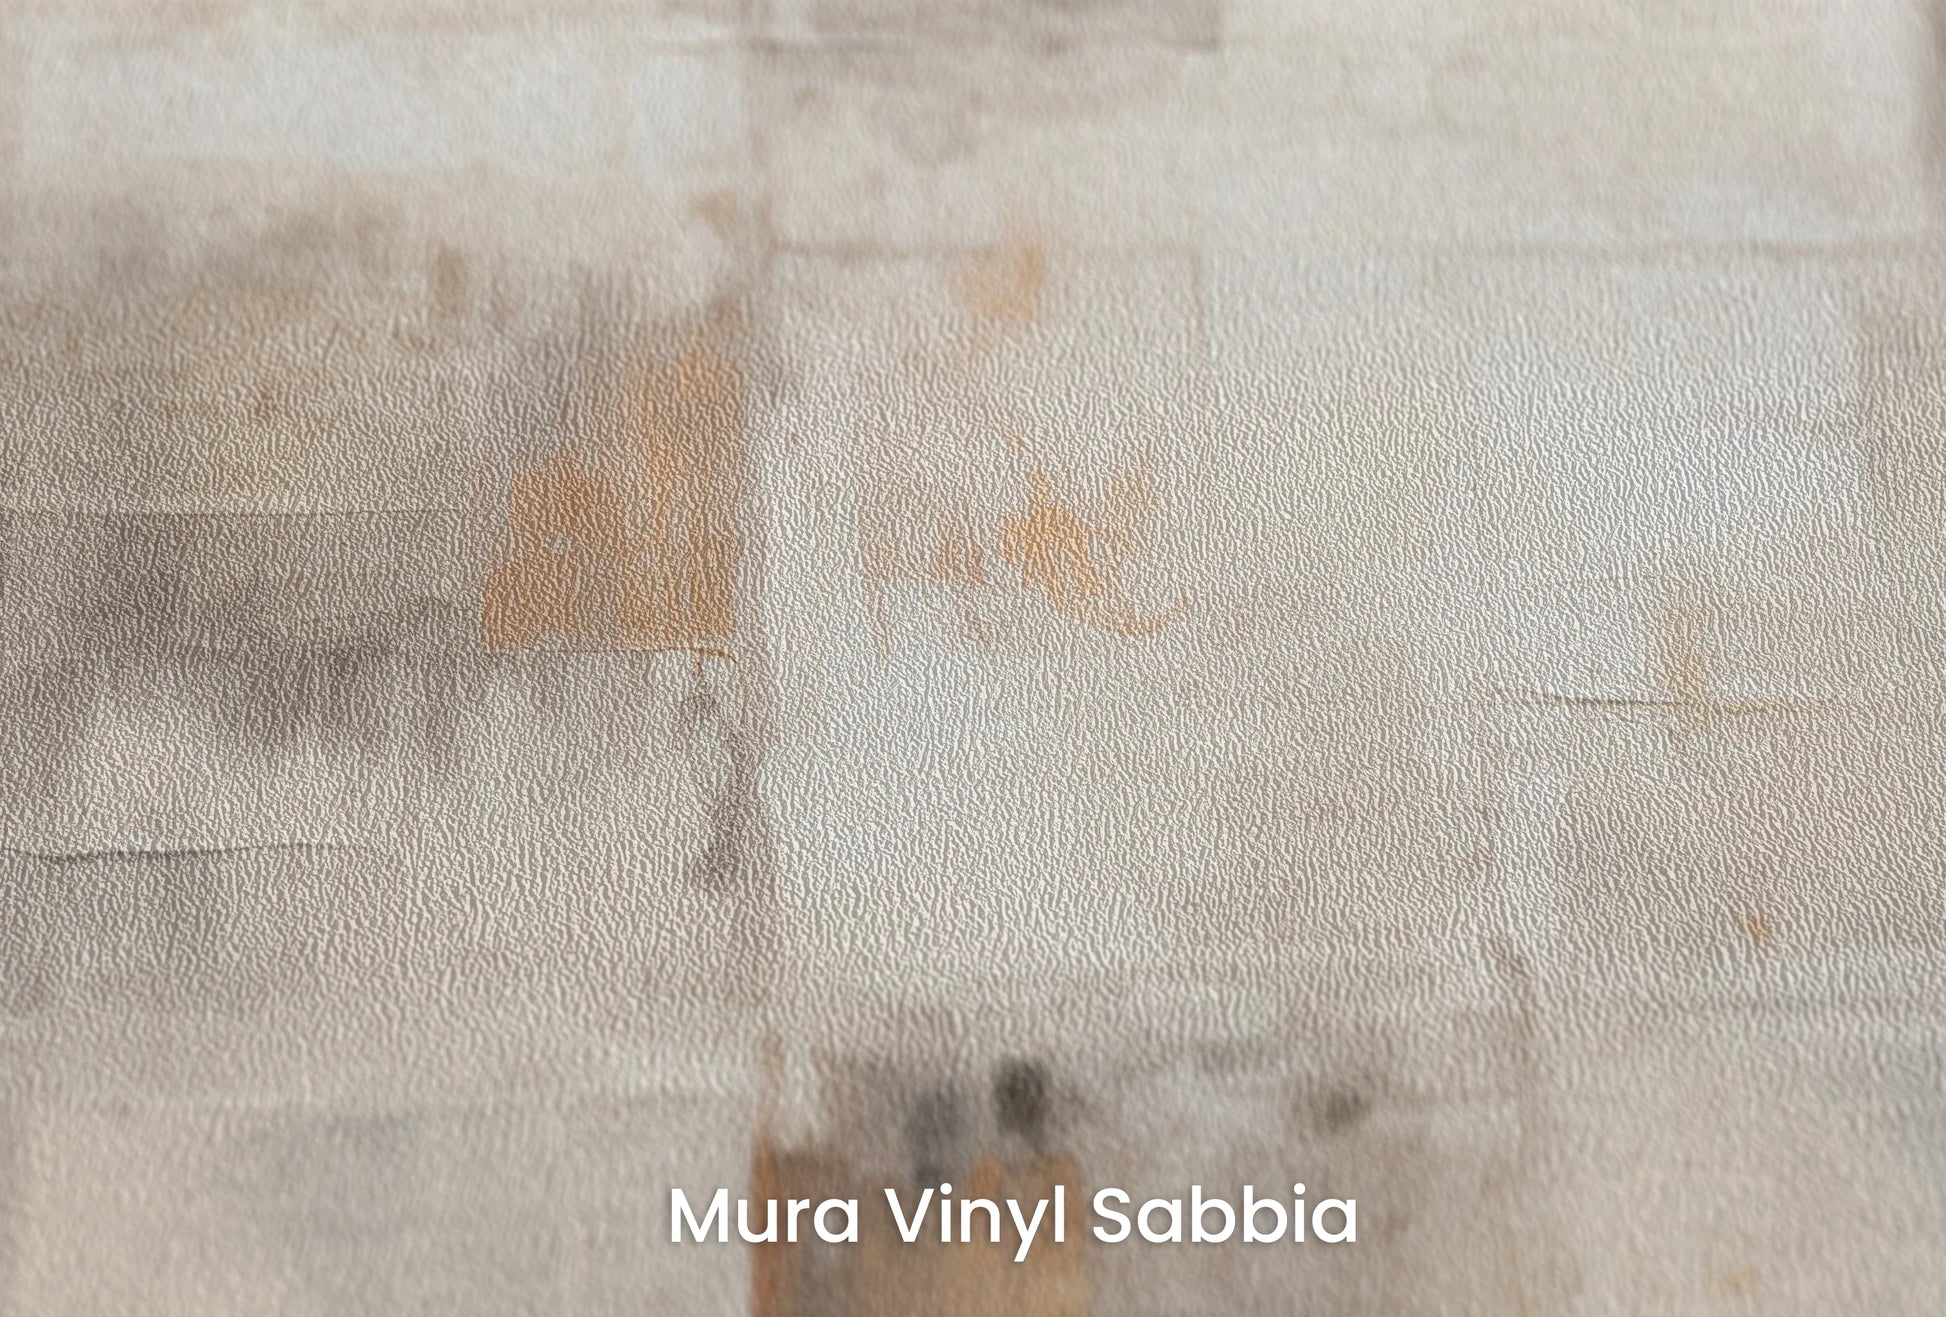 Zbliżenie na artystyczną fototapetę o nazwie Abstract Layers #2 na podłożu Mura Vinyl Sabbia struktura grubego ziarna piasku.